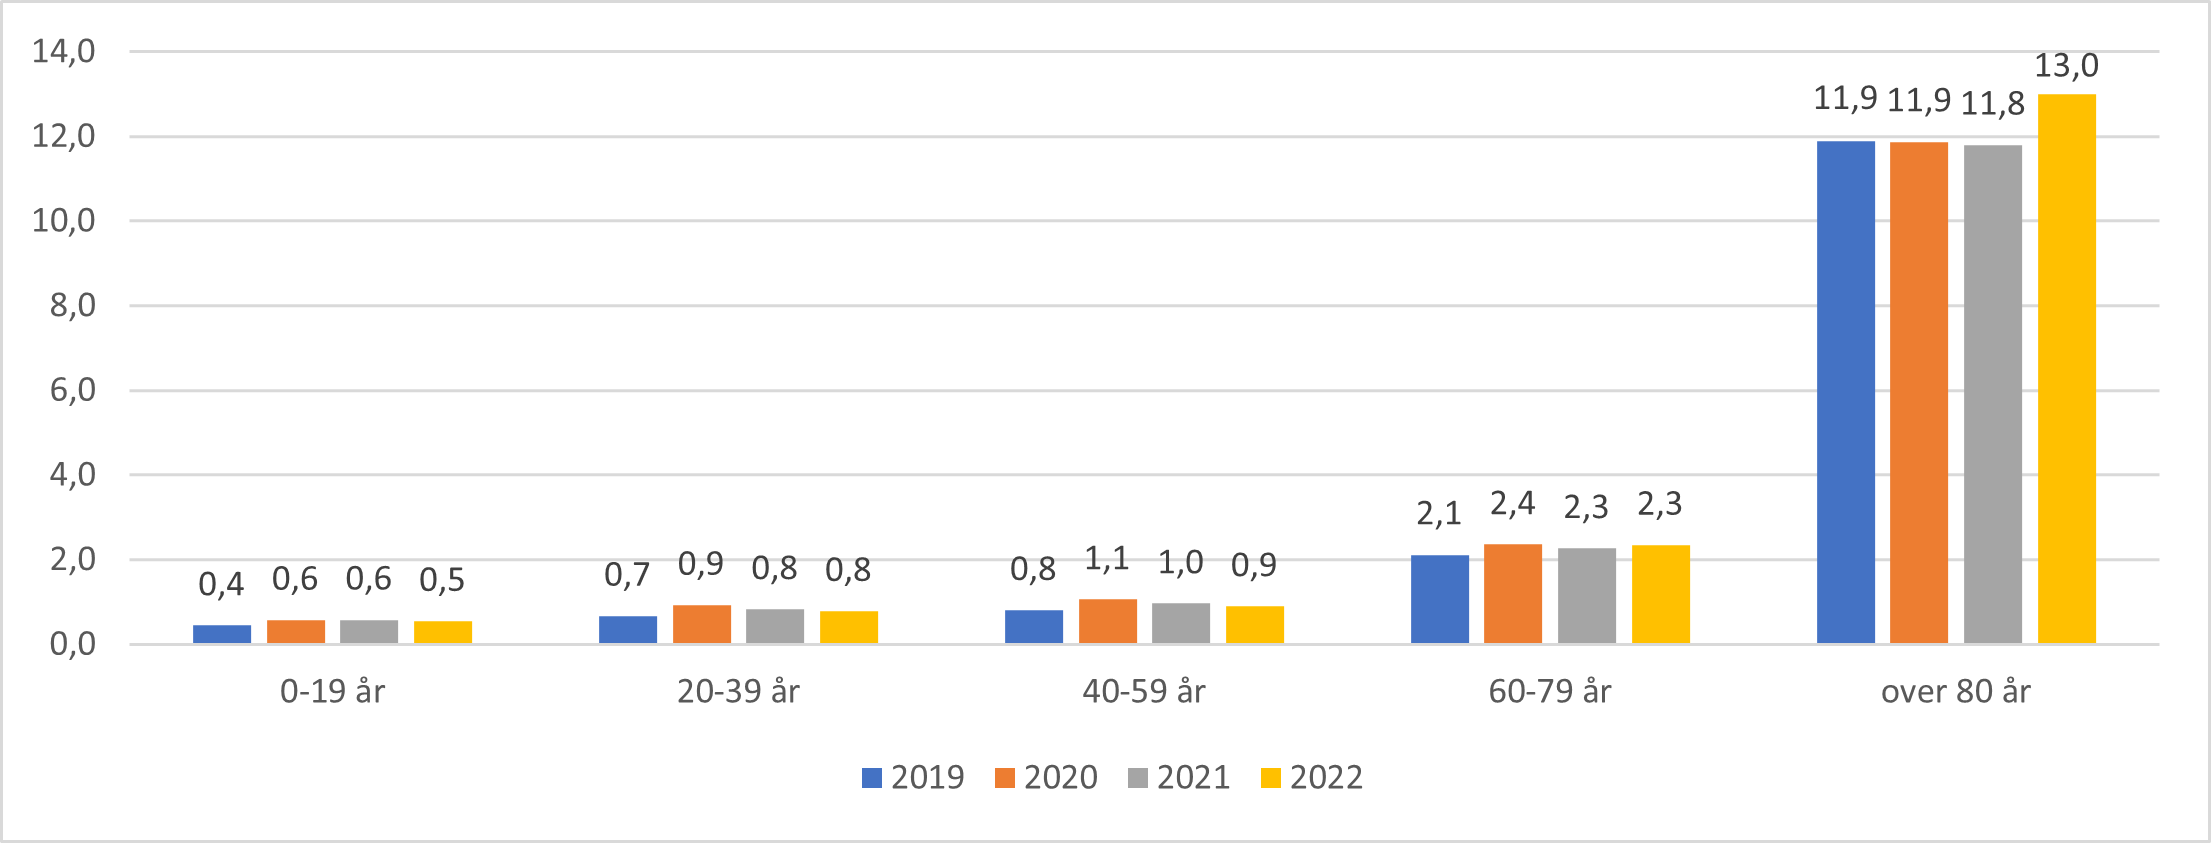 Antall sykebesøk av legevakt per 100 innbygger for aldersgrupper og totalt, 2019-2022.